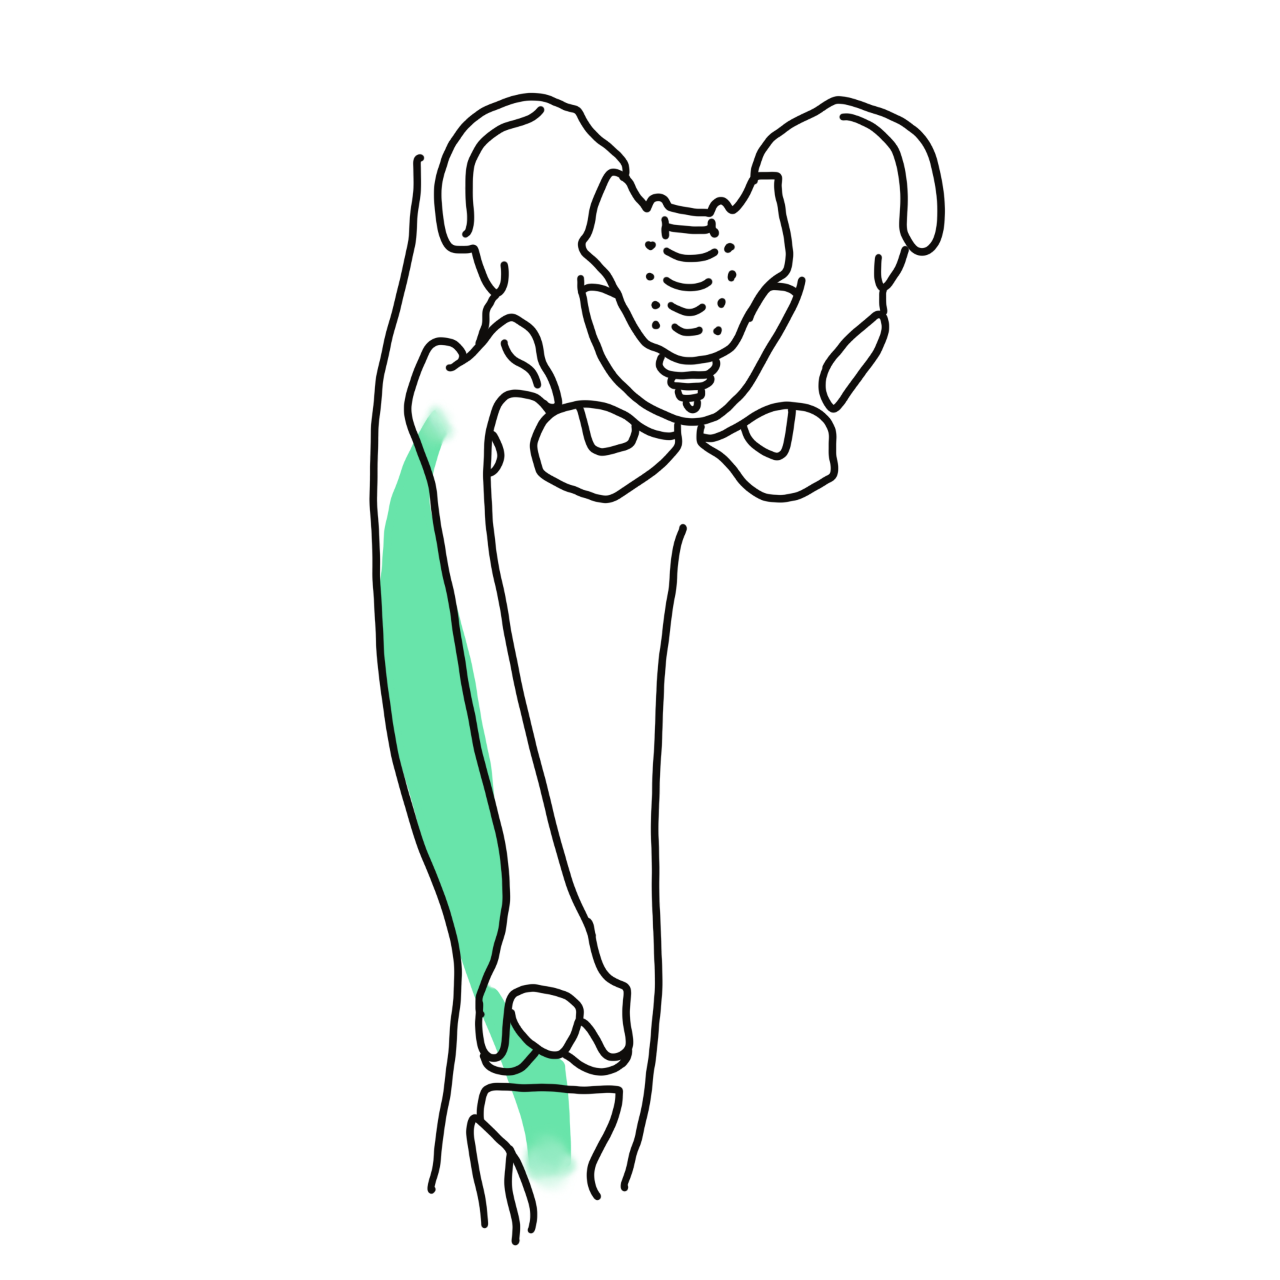 Vastus lateralis muscle in knee joint